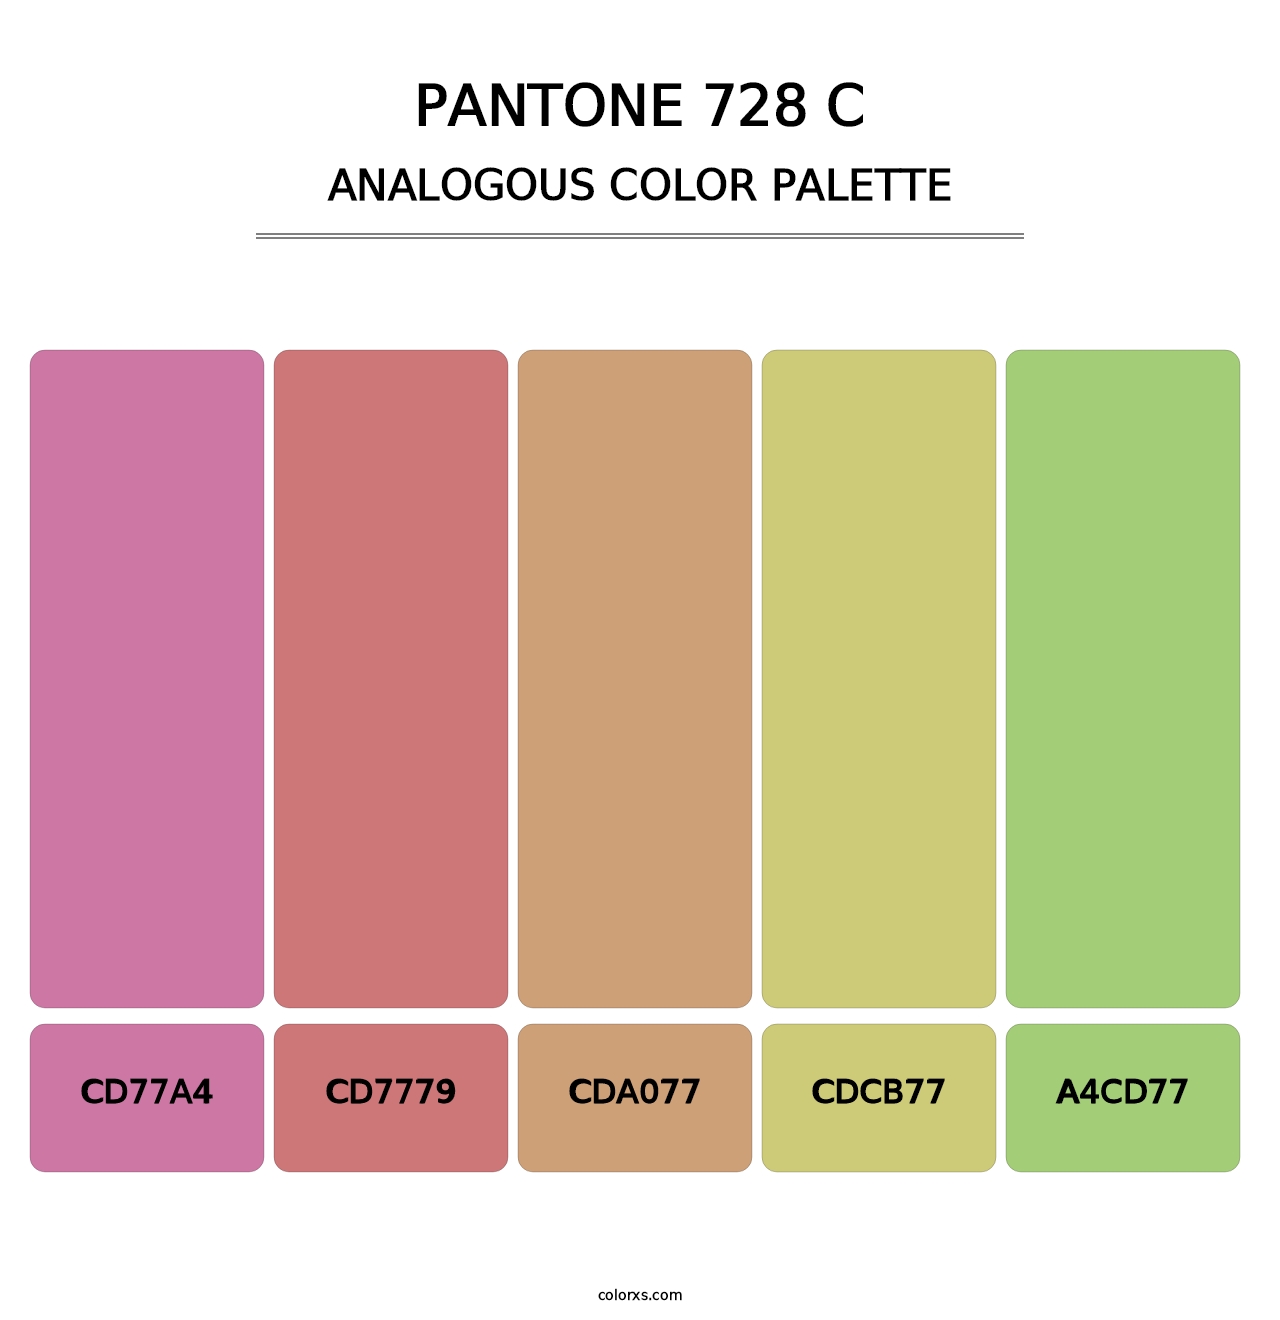 PANTONE 728 C - Analogous Color Palette